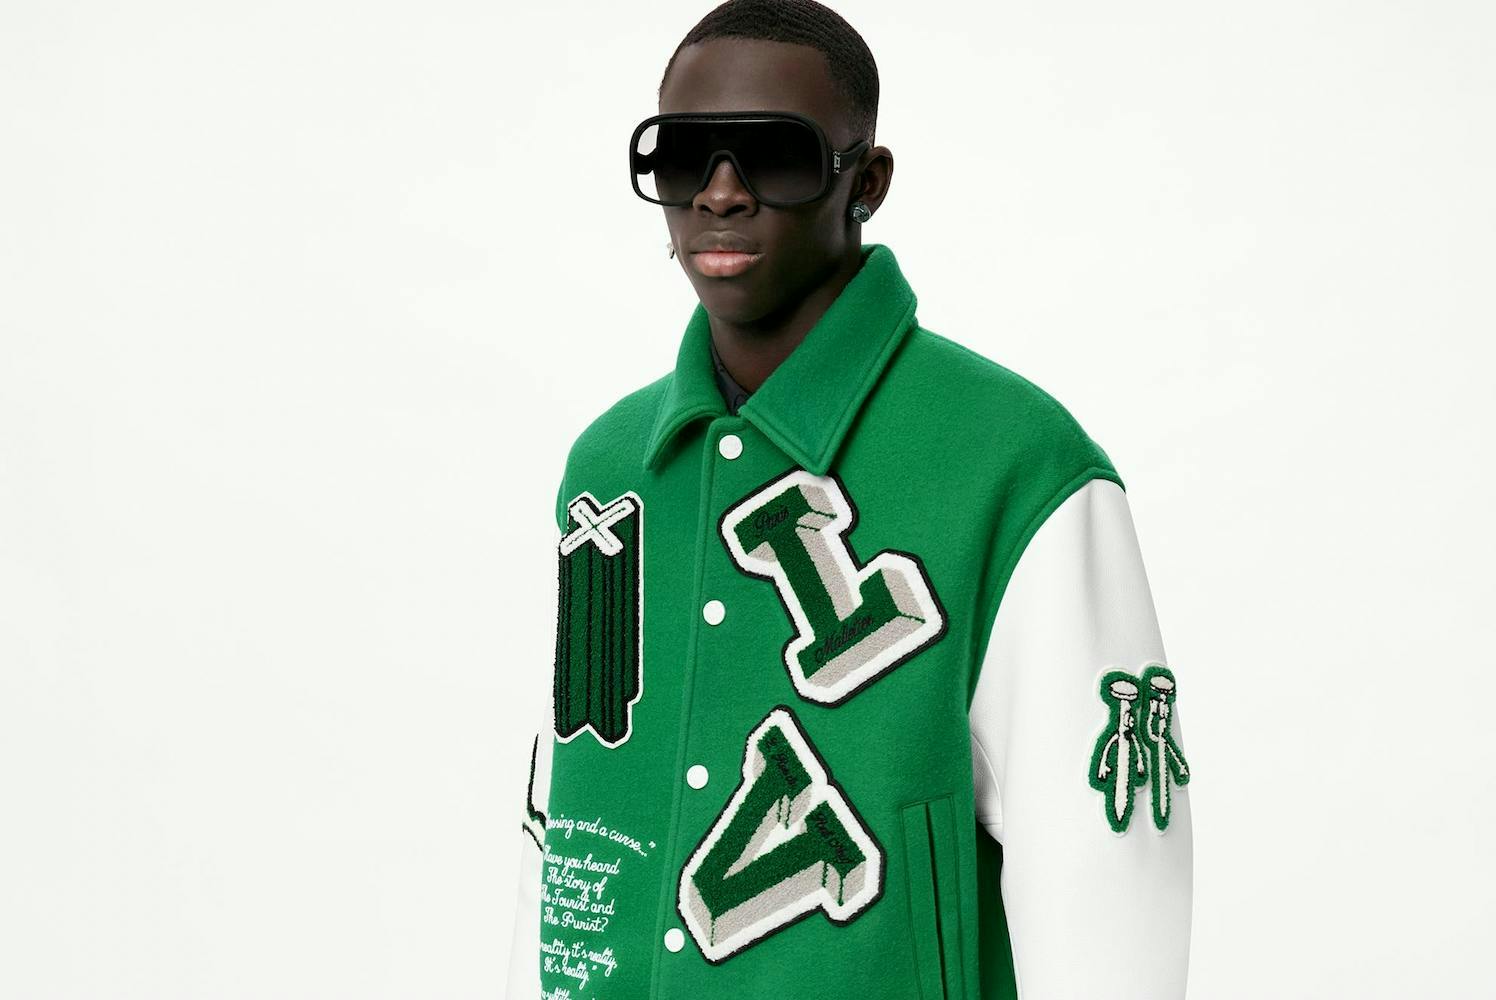 Male model wearing a green Louis Vuitton letterman jacket